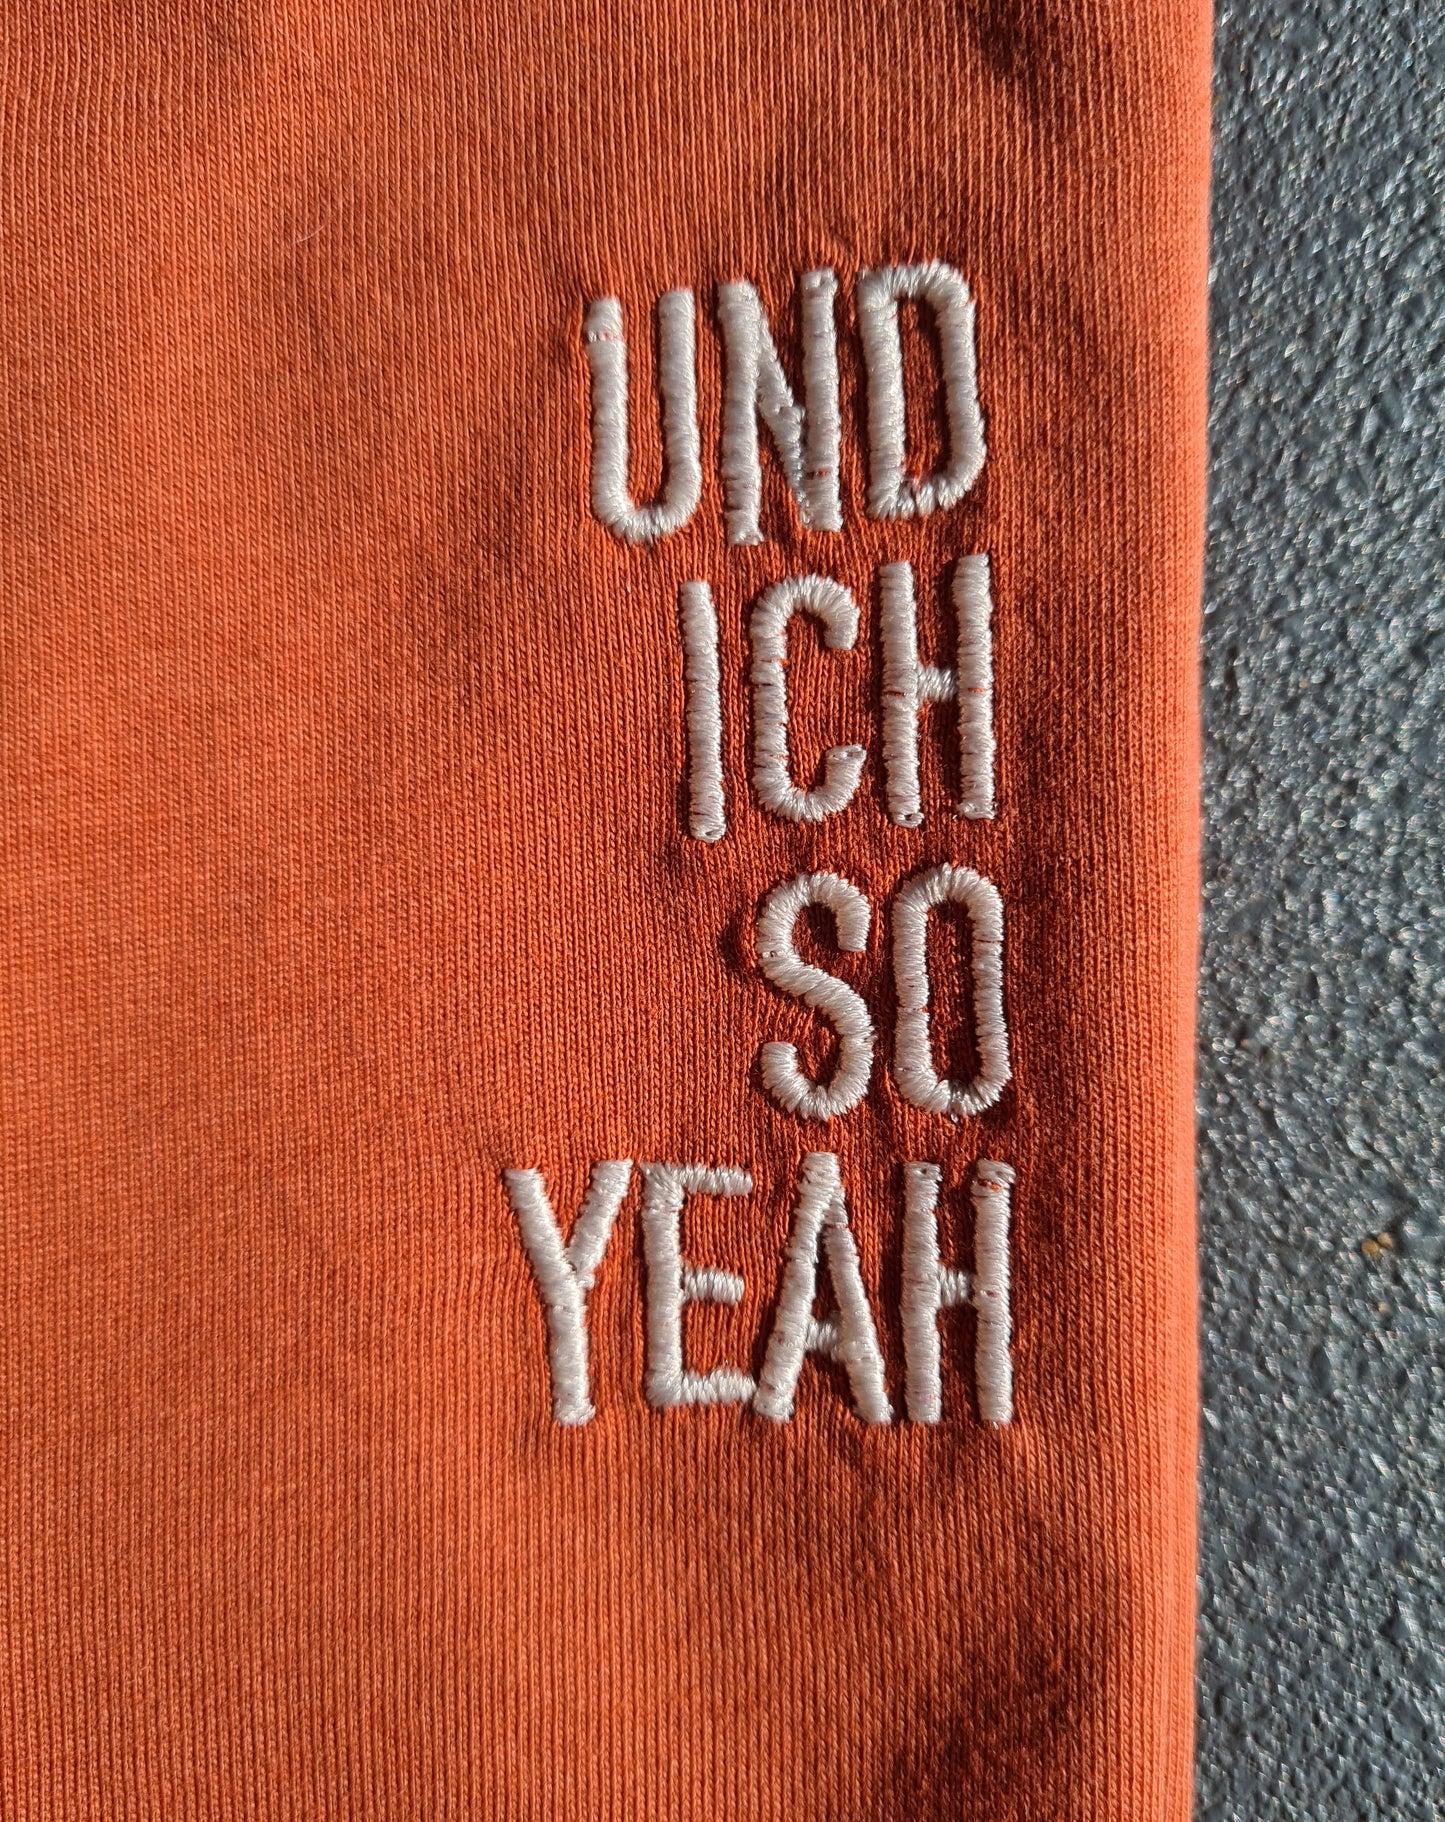 "Und ich so Yeah" Unisex Shirt